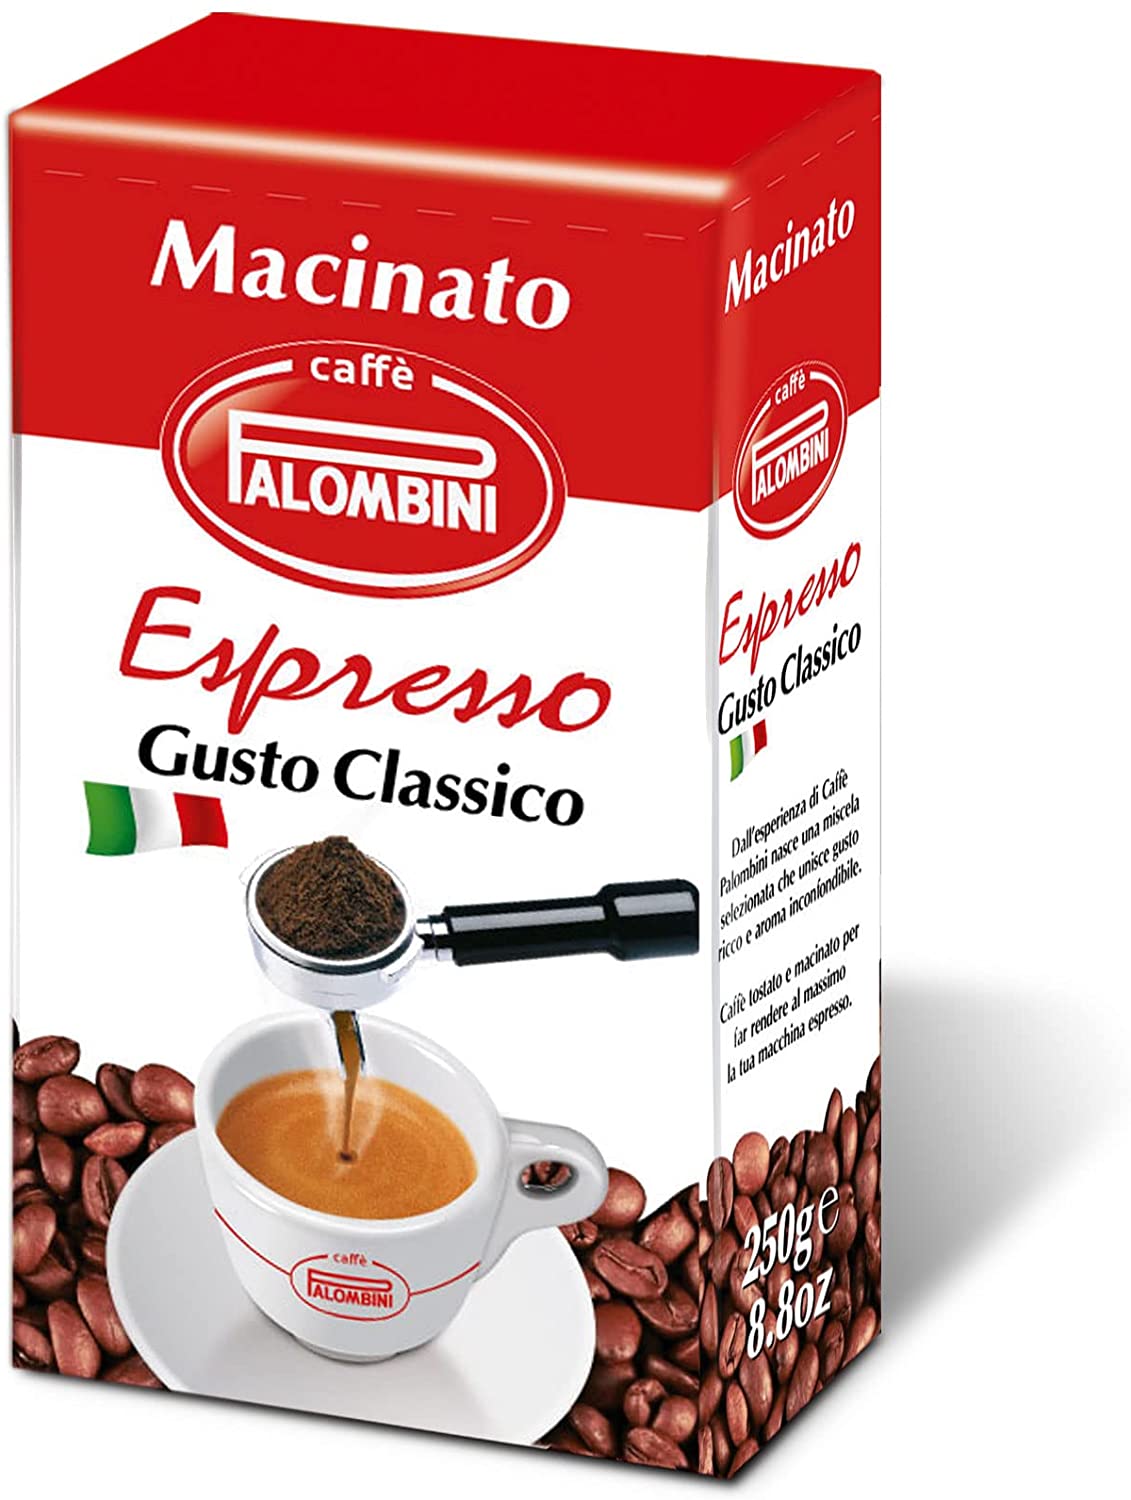 Caffè Palombini Maci Espresso 2 X 250g Gusto equilibrato